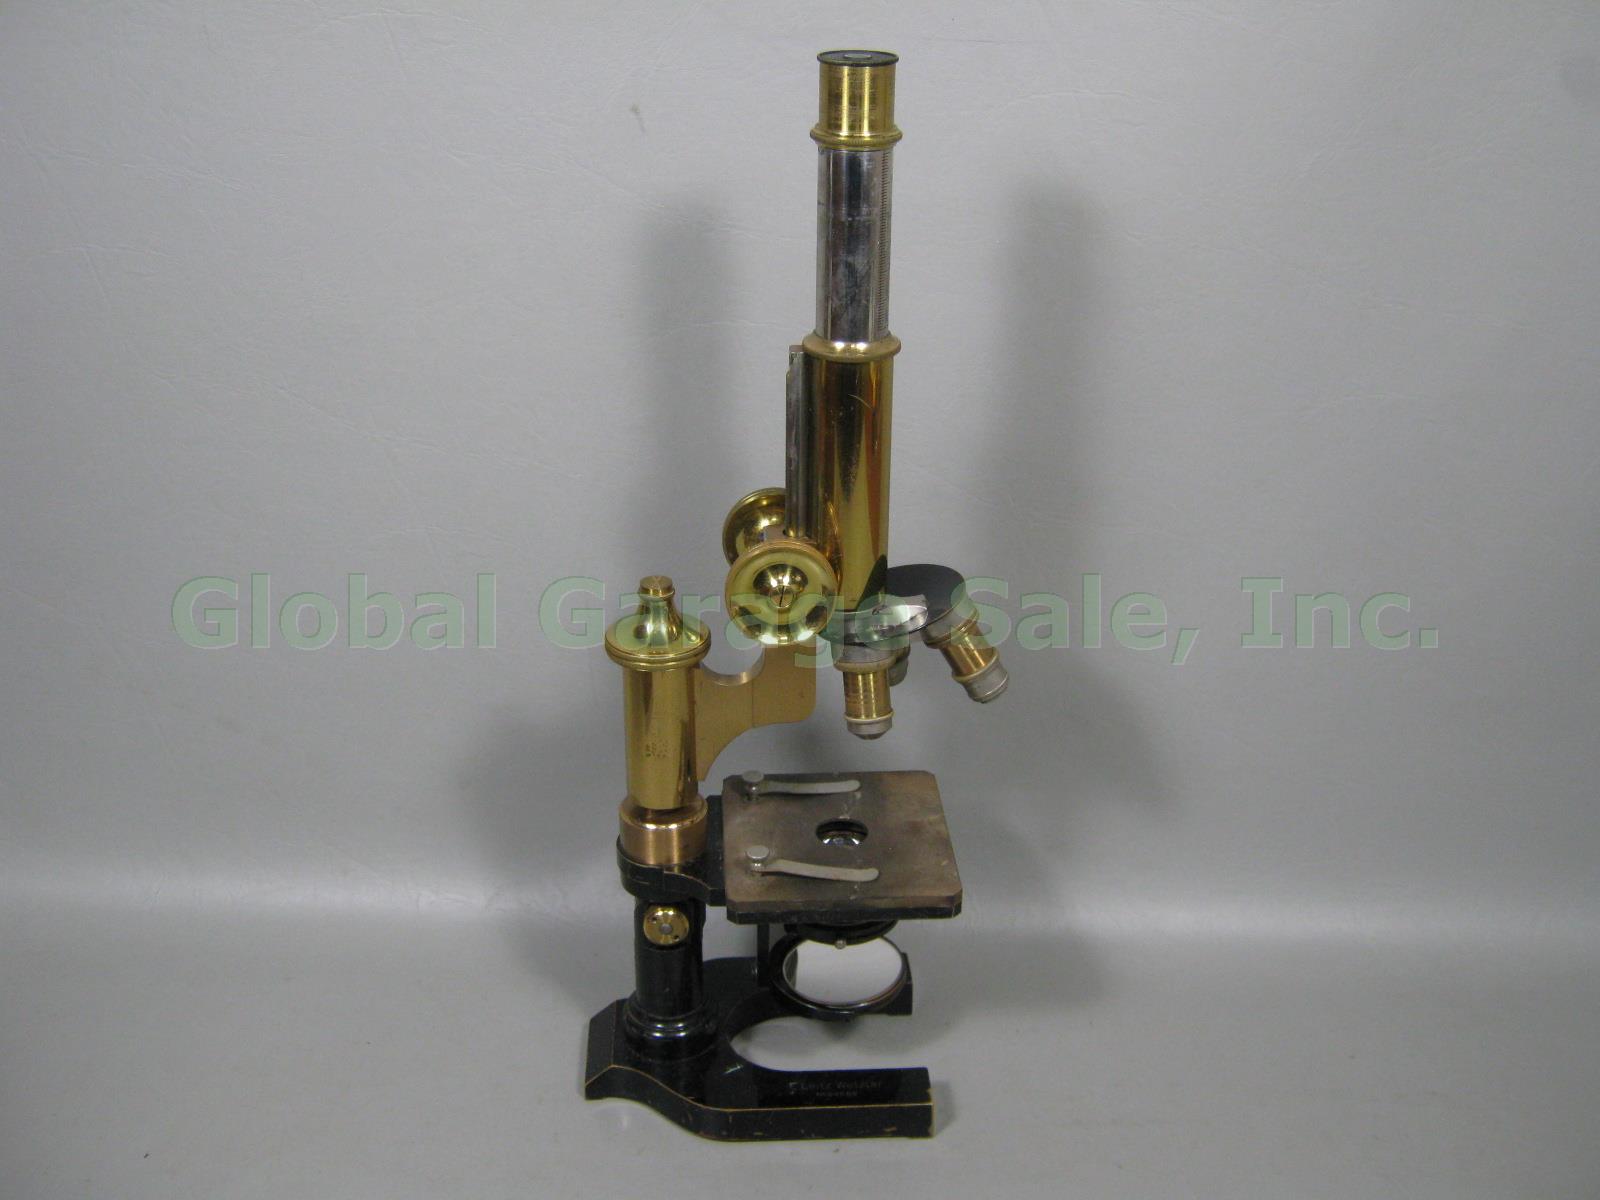 Vtg Antique E Leitz Wetzlar Brass Microscope 94062 Oil Immersion Objective +Case 2